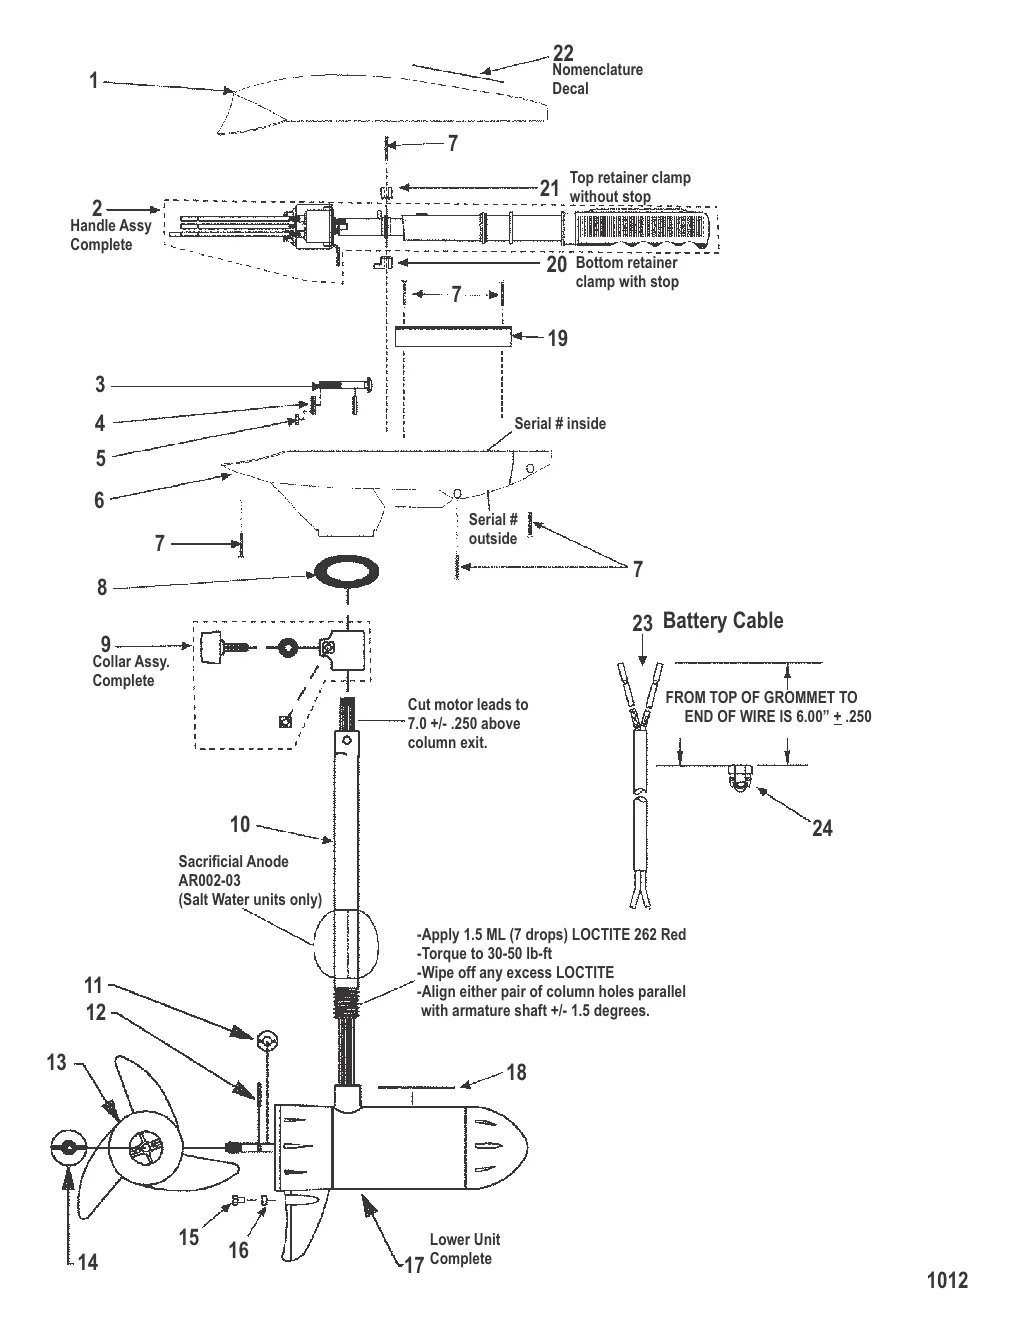 Двигатель для тралового лова в сборе (Модель ET38 / EHB38) (12 В)